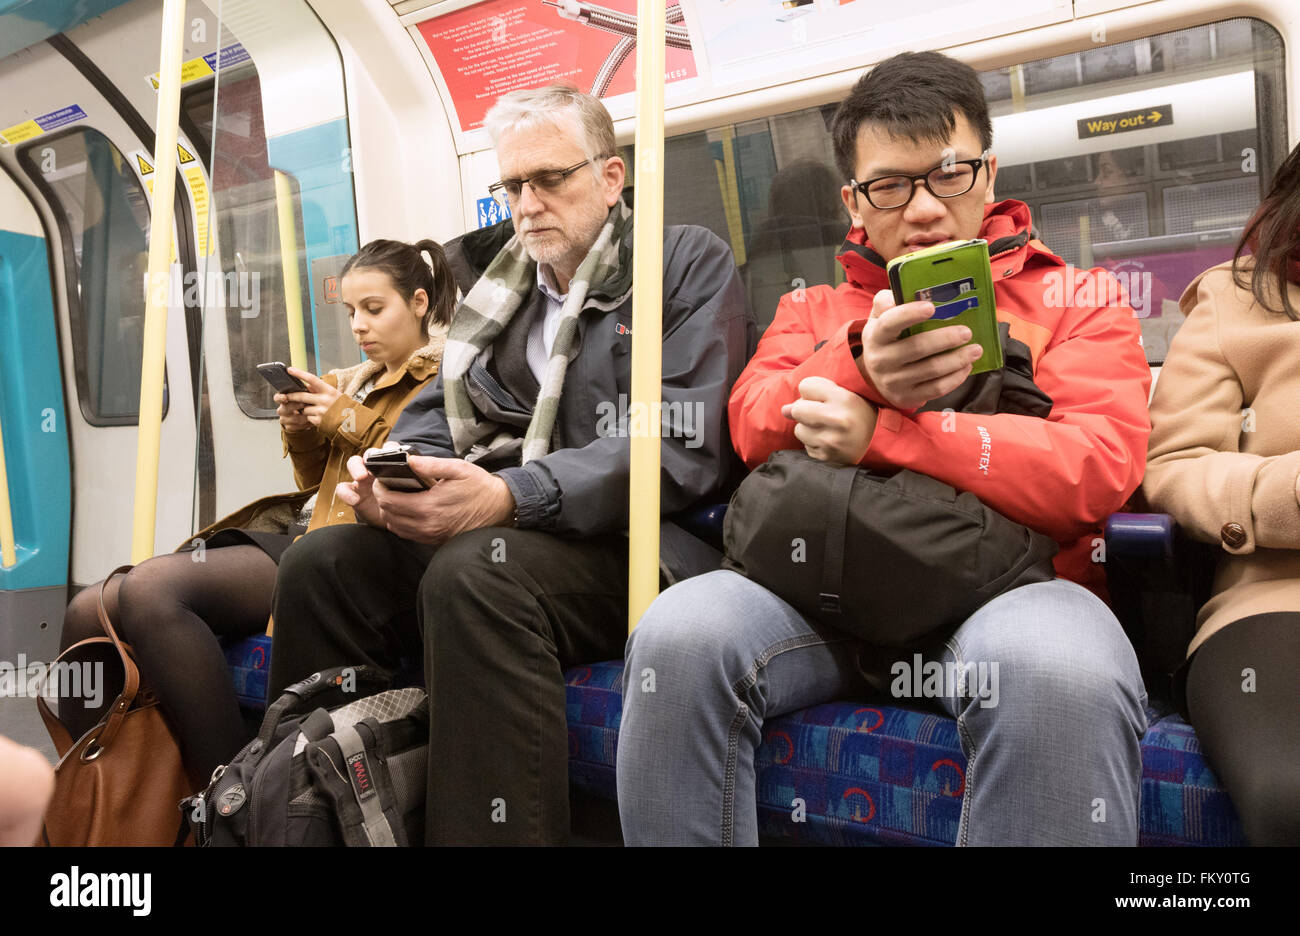 Mobiltelefone im öffentlichen Verkehr; Passagiere, die Mobiltelefone in einer Eisenbahn-Kutsche der Londoner U-Bahn, London UK, verwenden Stockfoto